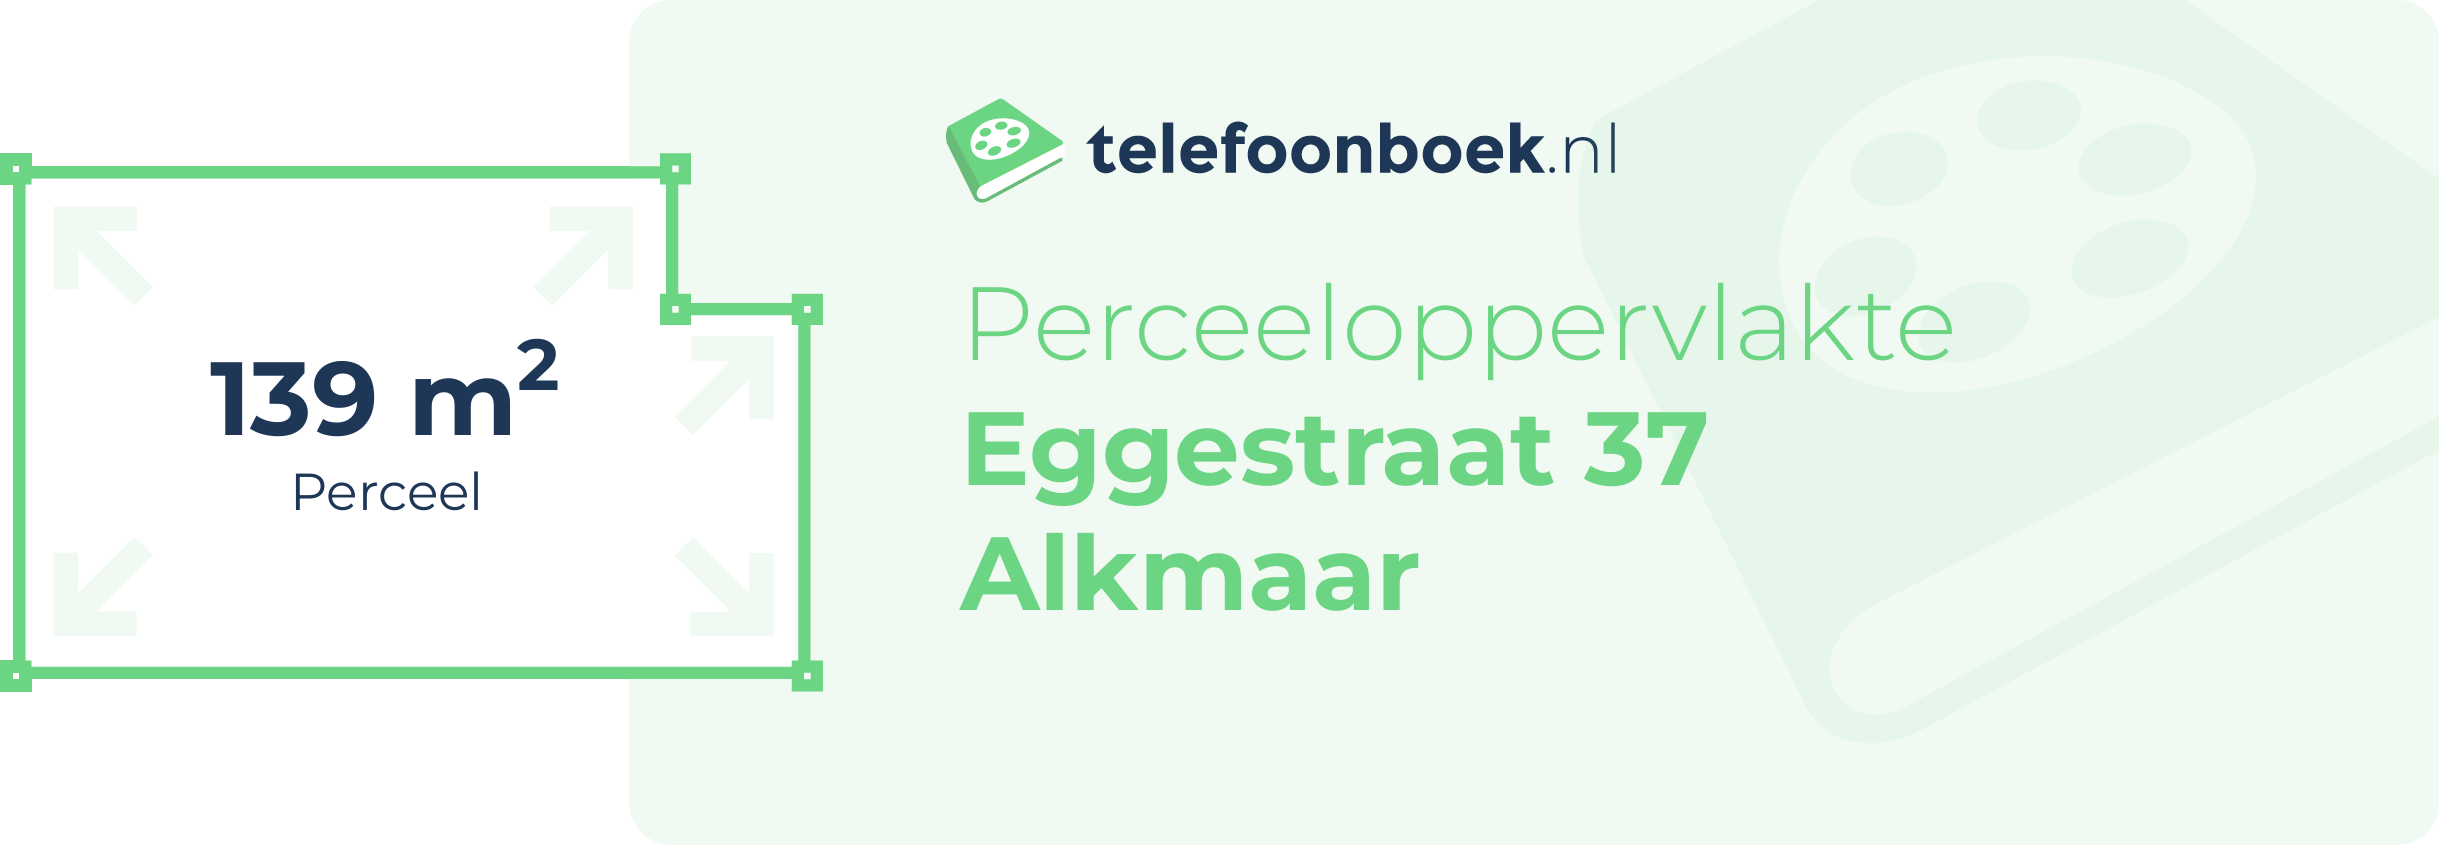 Perceeloppervlakte Eggestraat 37 Alkmaar